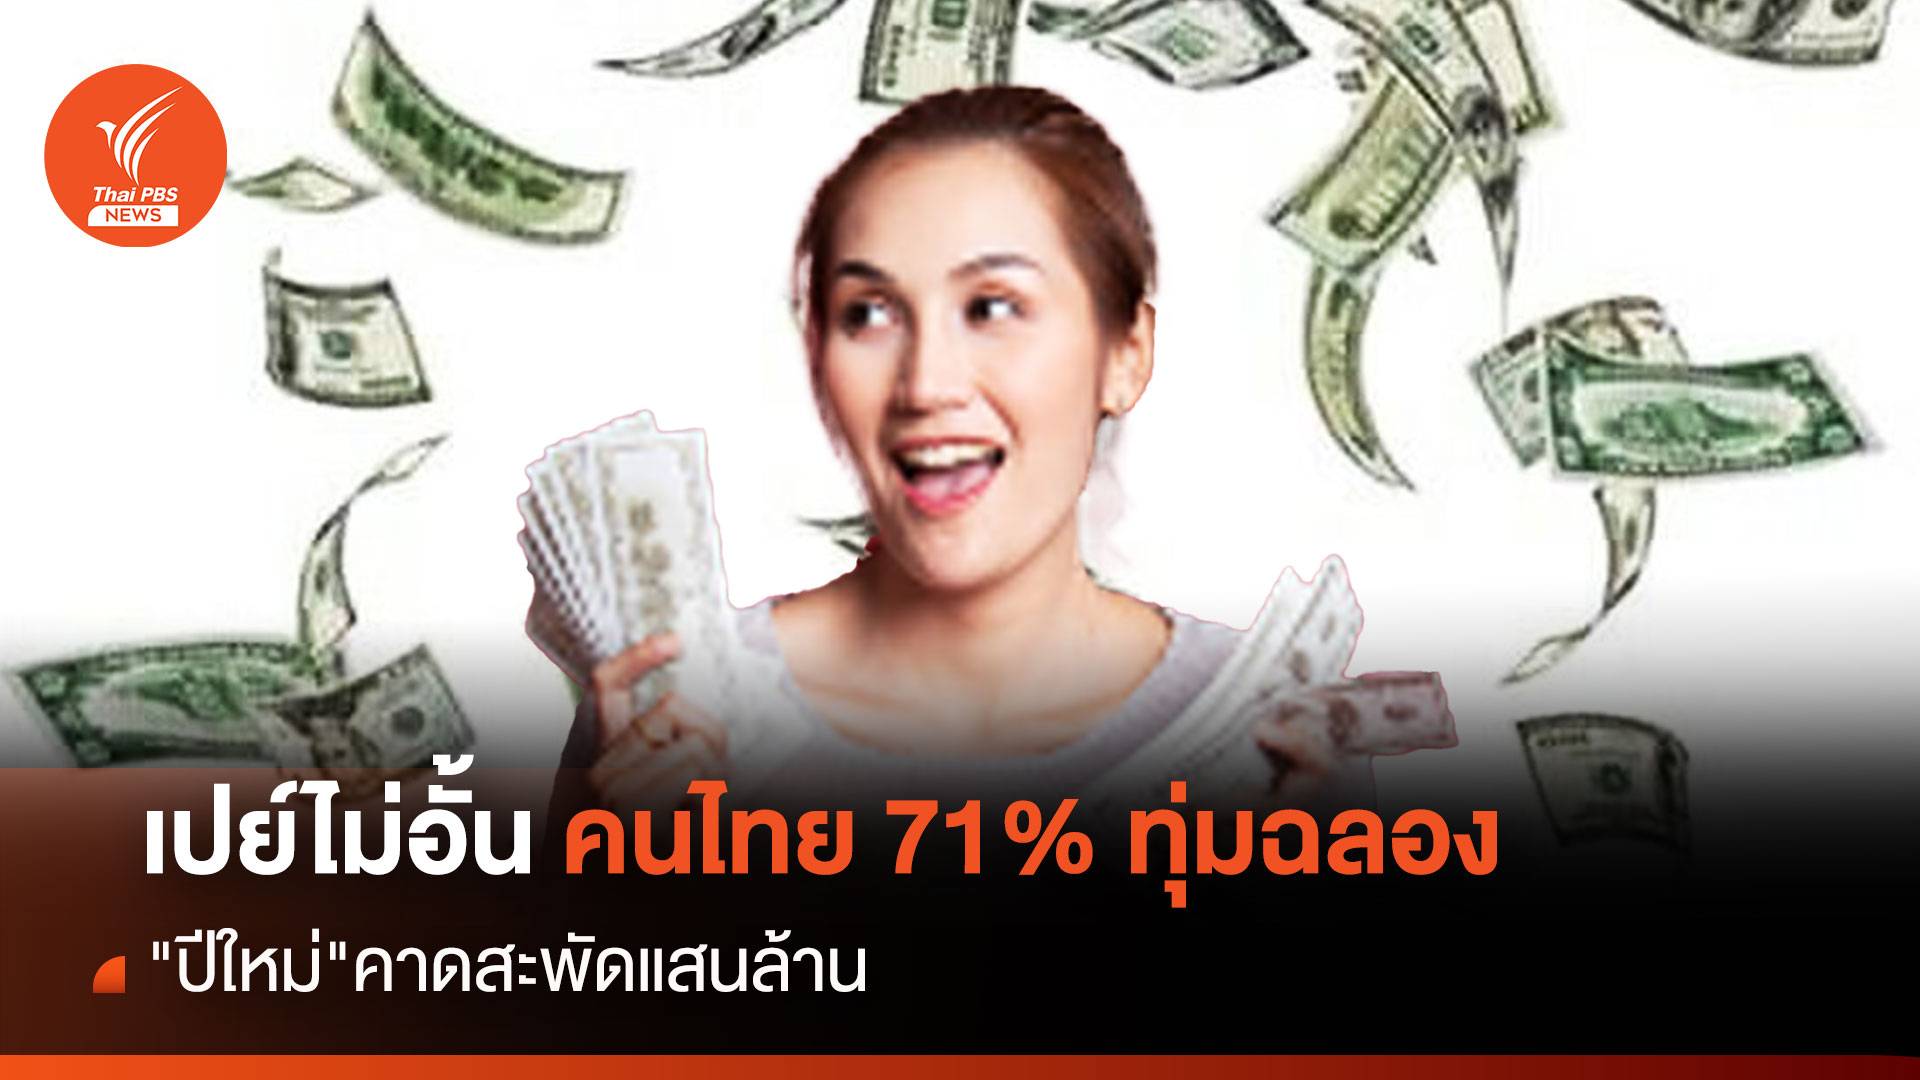 เปย์ไม่อั้น คนไทย 71% ทุ่มฉลอง "ปีใหม่" คาดสะพัดแสนล้าน